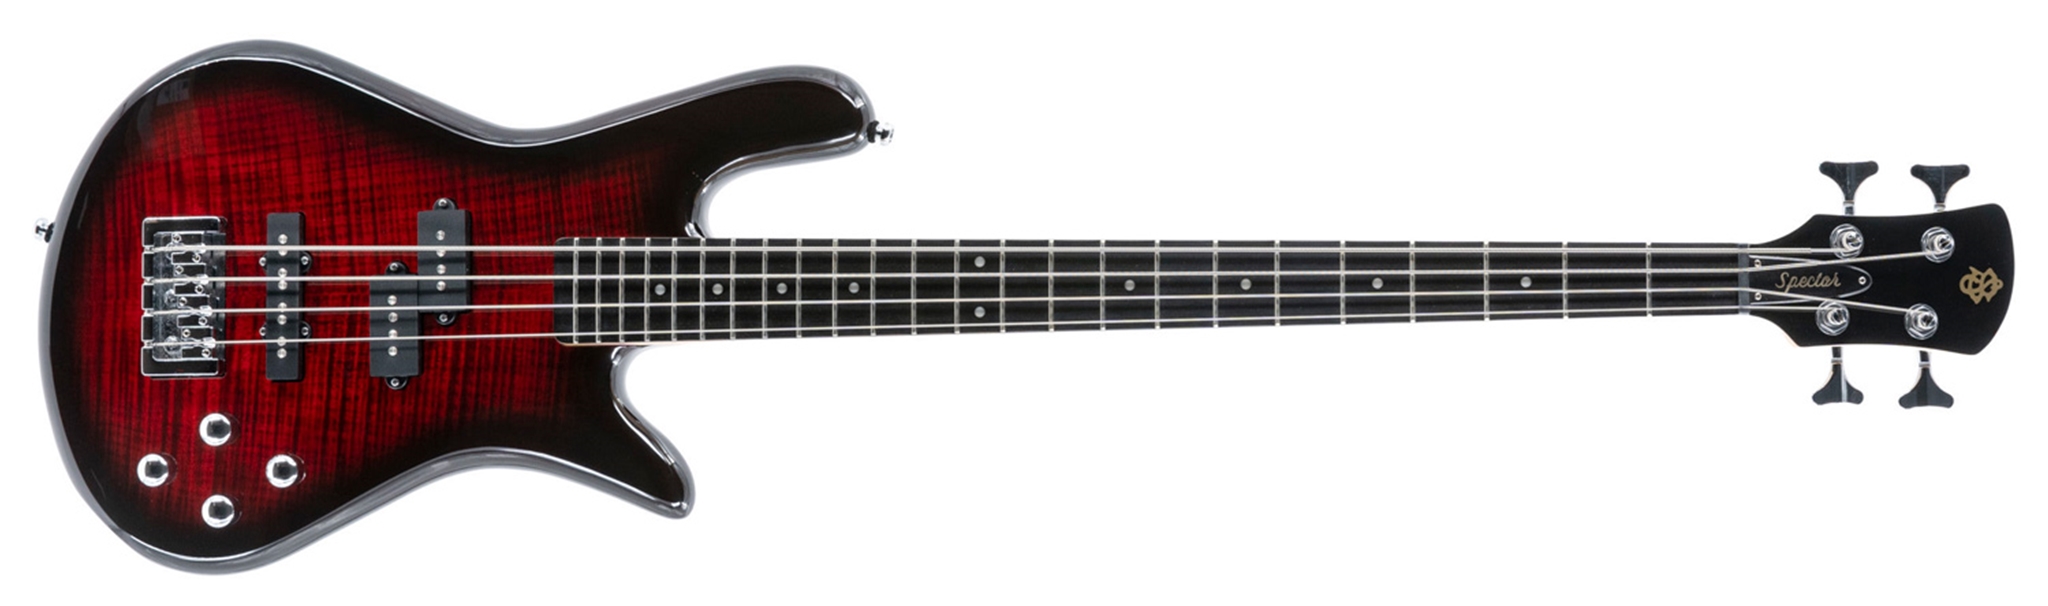 Spector Legend-4  Standard Black Cherry 4-String Electric Bass Guitar  